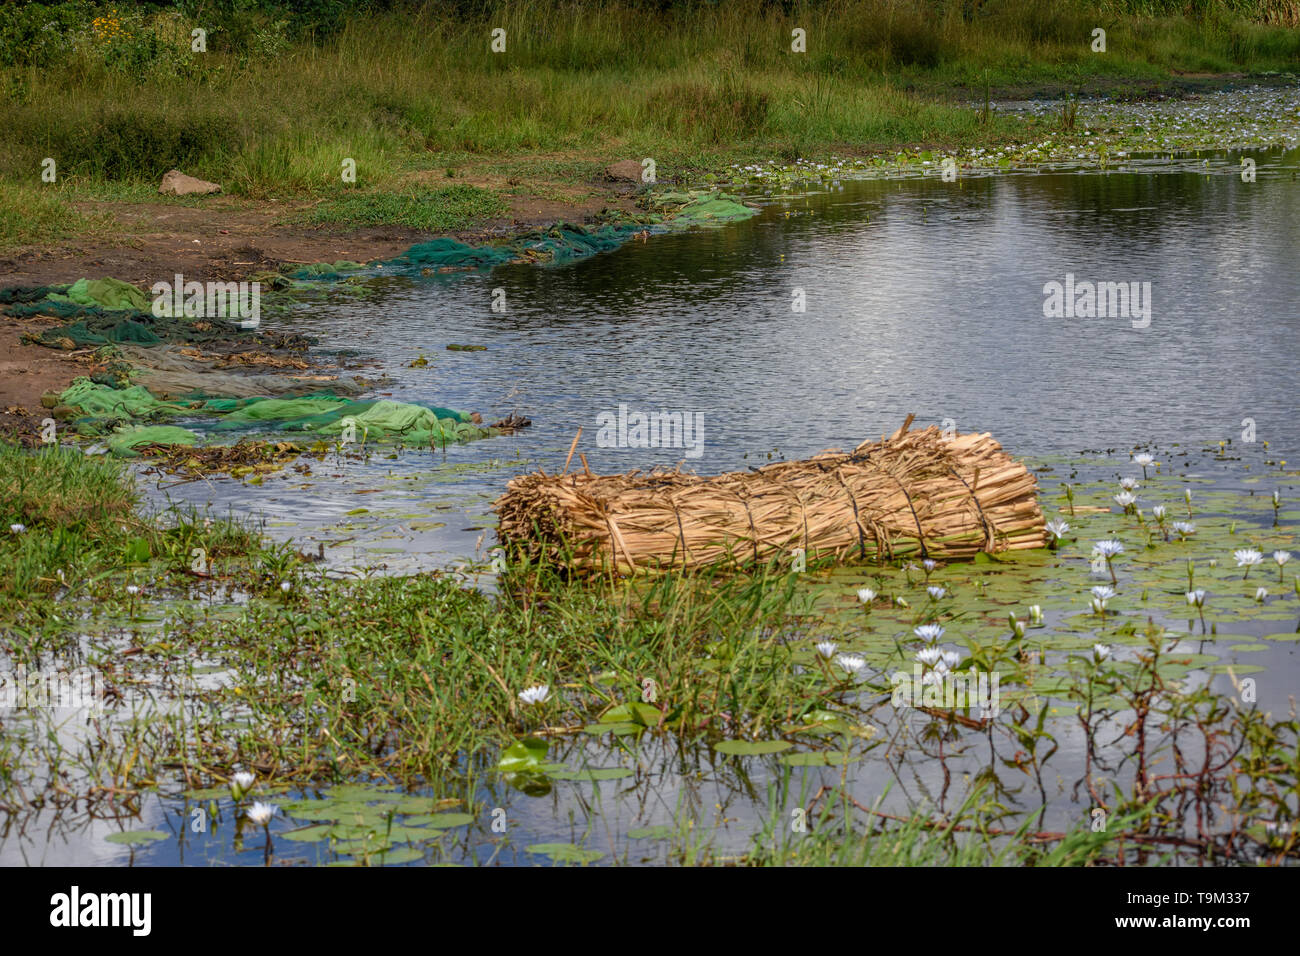 Una foto di una zattera fatta in casa su un lago sul bordo di un villaggio del Malawi la zattera essendo realizzato da canne legate insieme Foto Stock